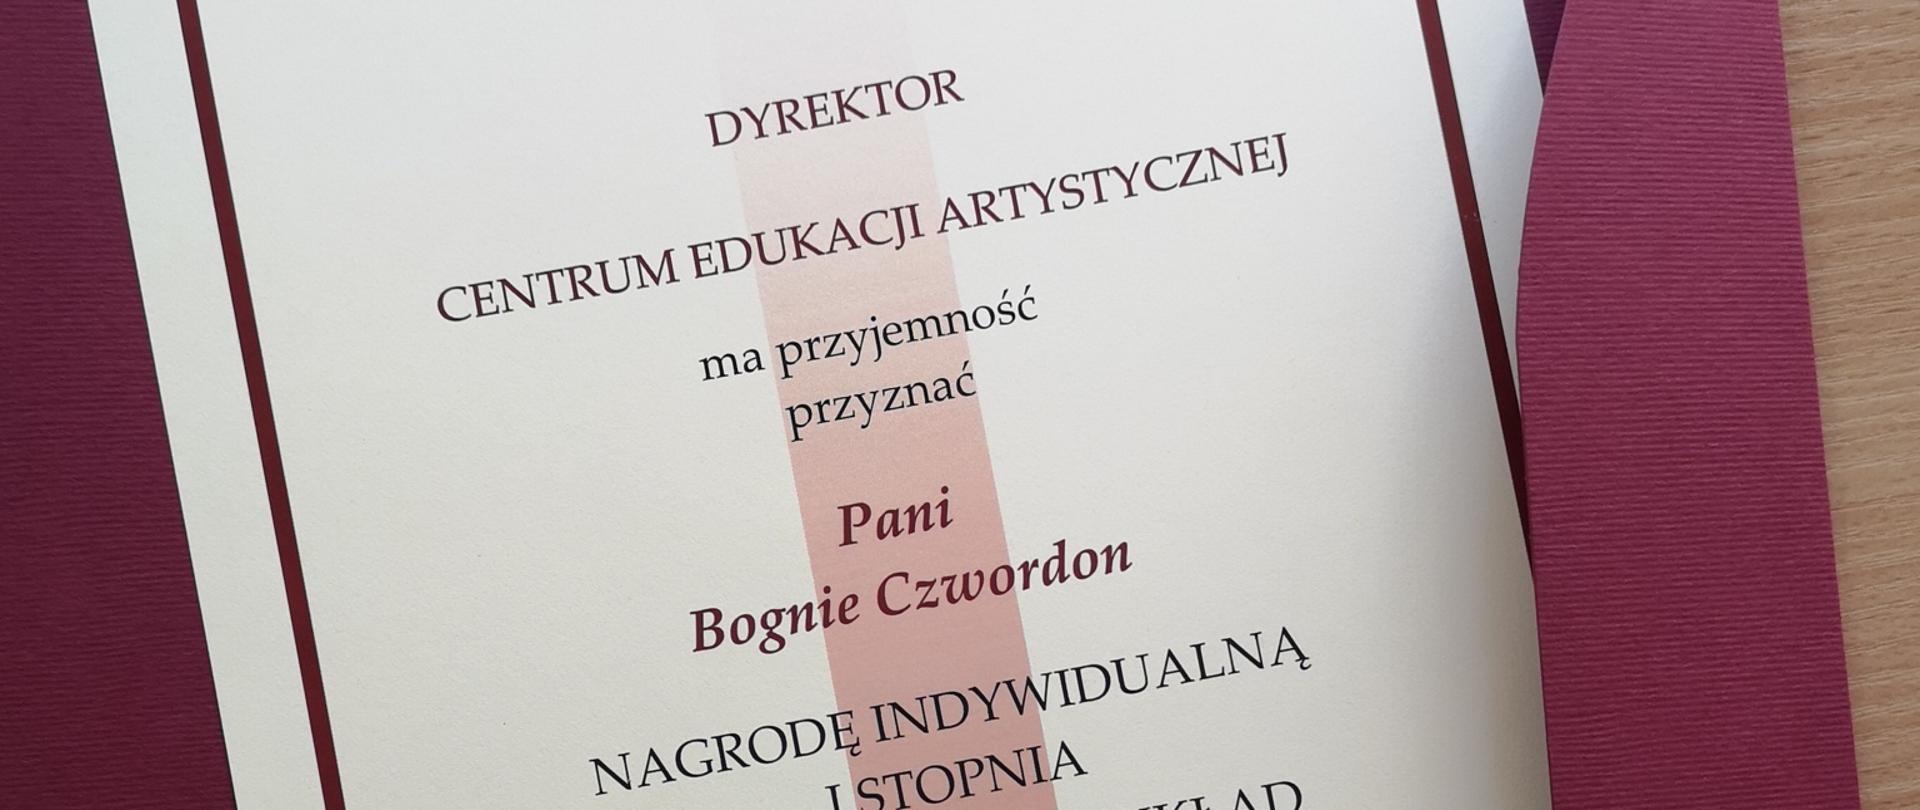 Zdjęcie dyplomu w bordowej teczce z napisemL: Dyrektor CEA ma przyjemność przyznać Pani Bognie Czwordon nagrodę indywidualną I stopnia za szczególny wkład w rozwój edukacji artystycznej w Polsce"